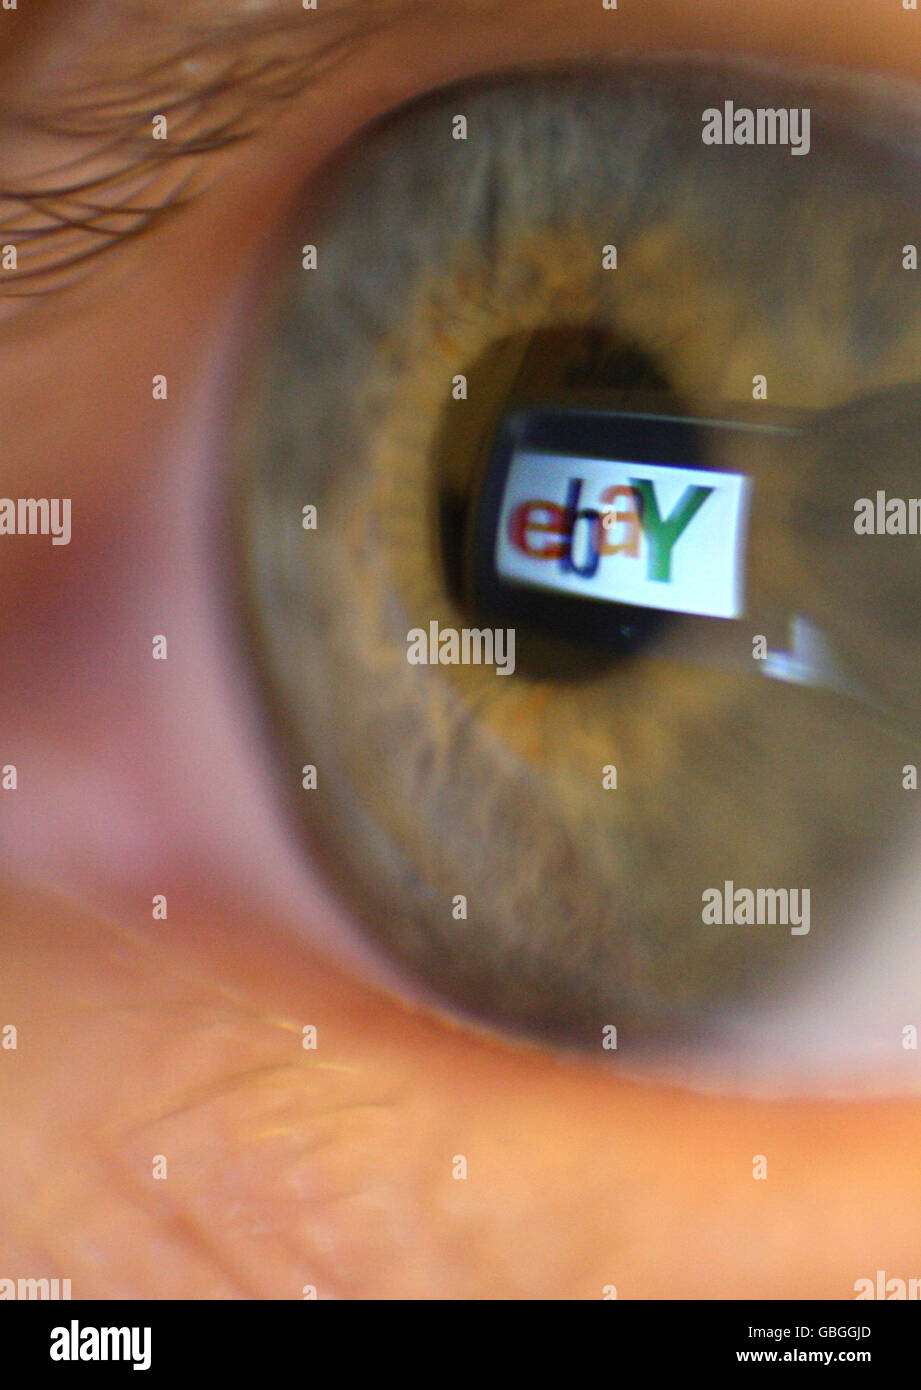 Stock de eBay. Una foto genérica del logotipo de Ebay visto reflejado en el ojo de una persona. Foto de stock